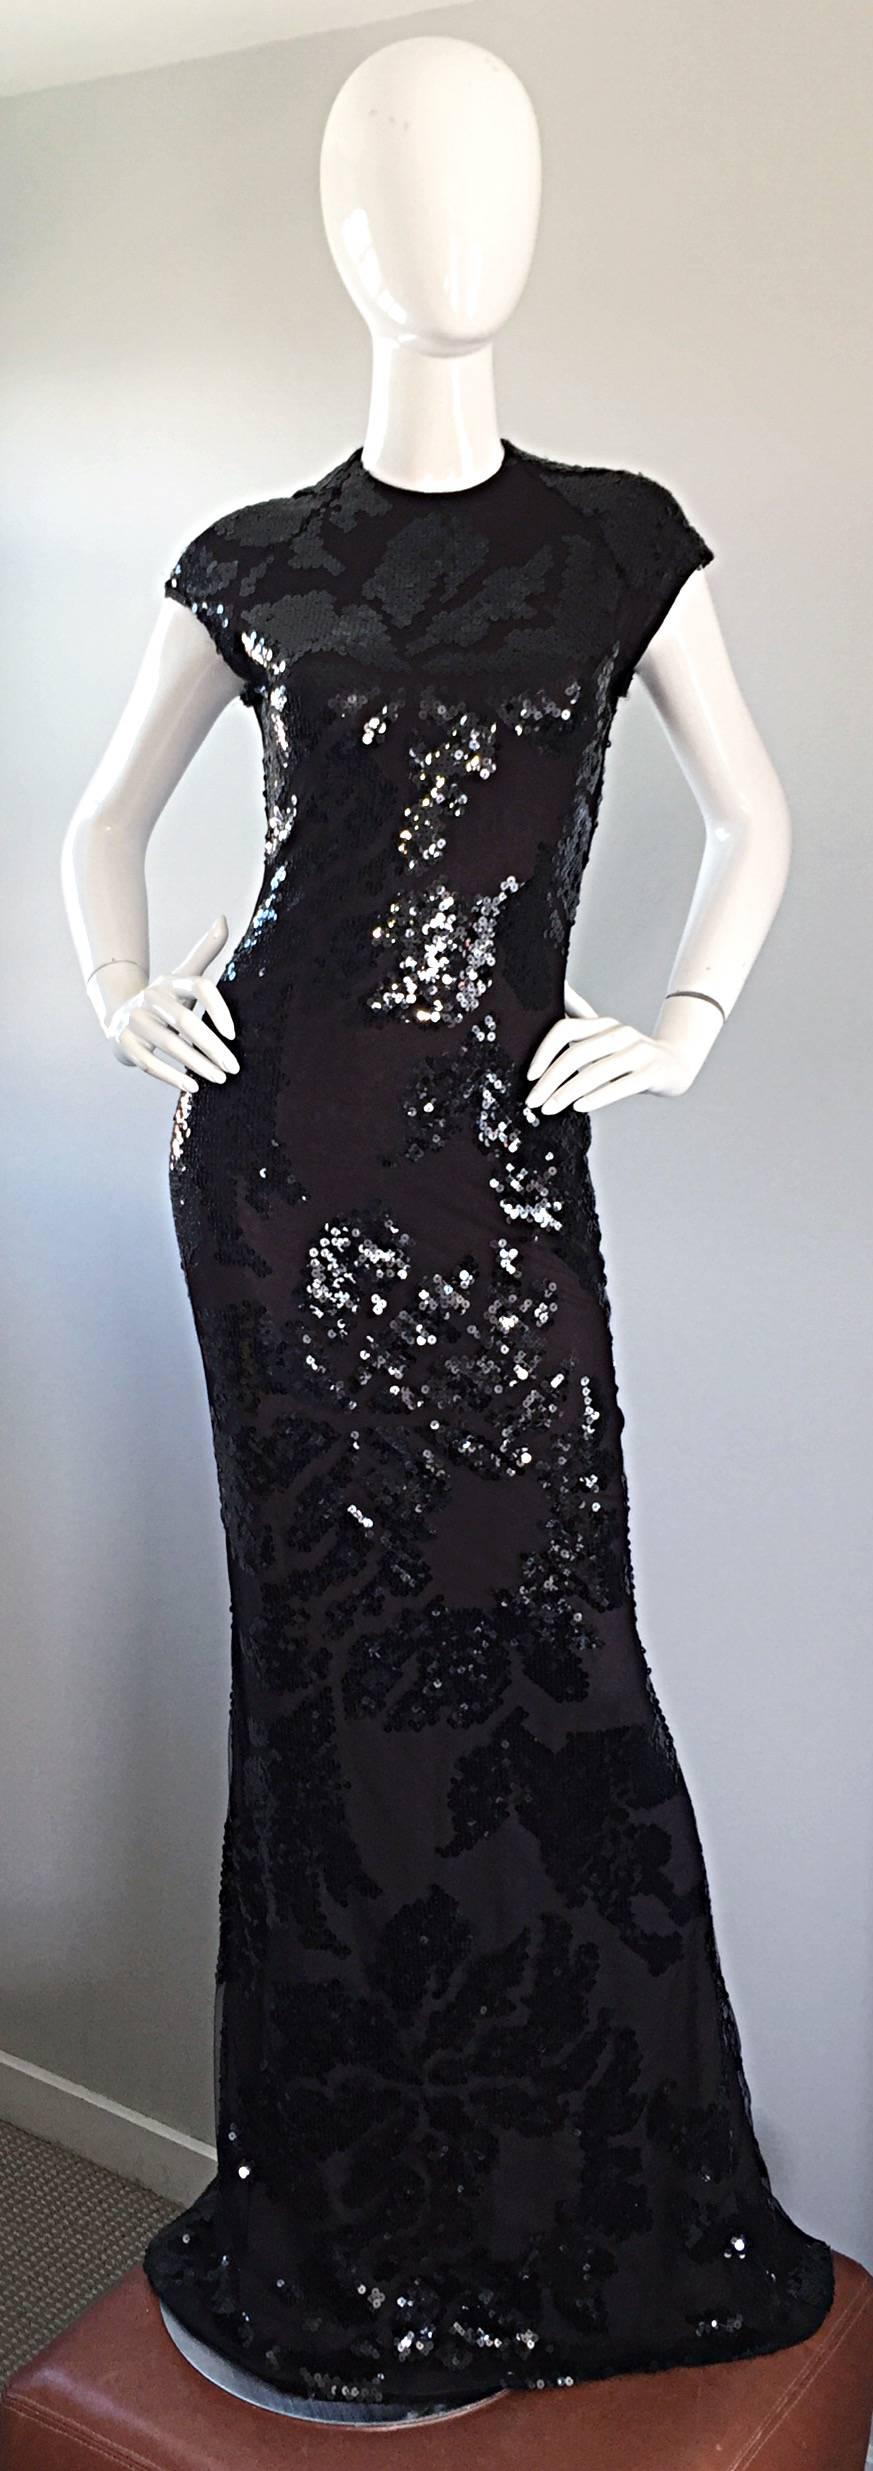 Unglaublich schön, selten UND wichtig, brandneu mit originalem $12.000 Preisschild (würde heute weit über $20.000 entsprechen), ist dieses Vintage HALSTON Couture Kleid wirklich atemberaubend! Schwarze Seide mit schickem Netzüberzug aus schwarzer